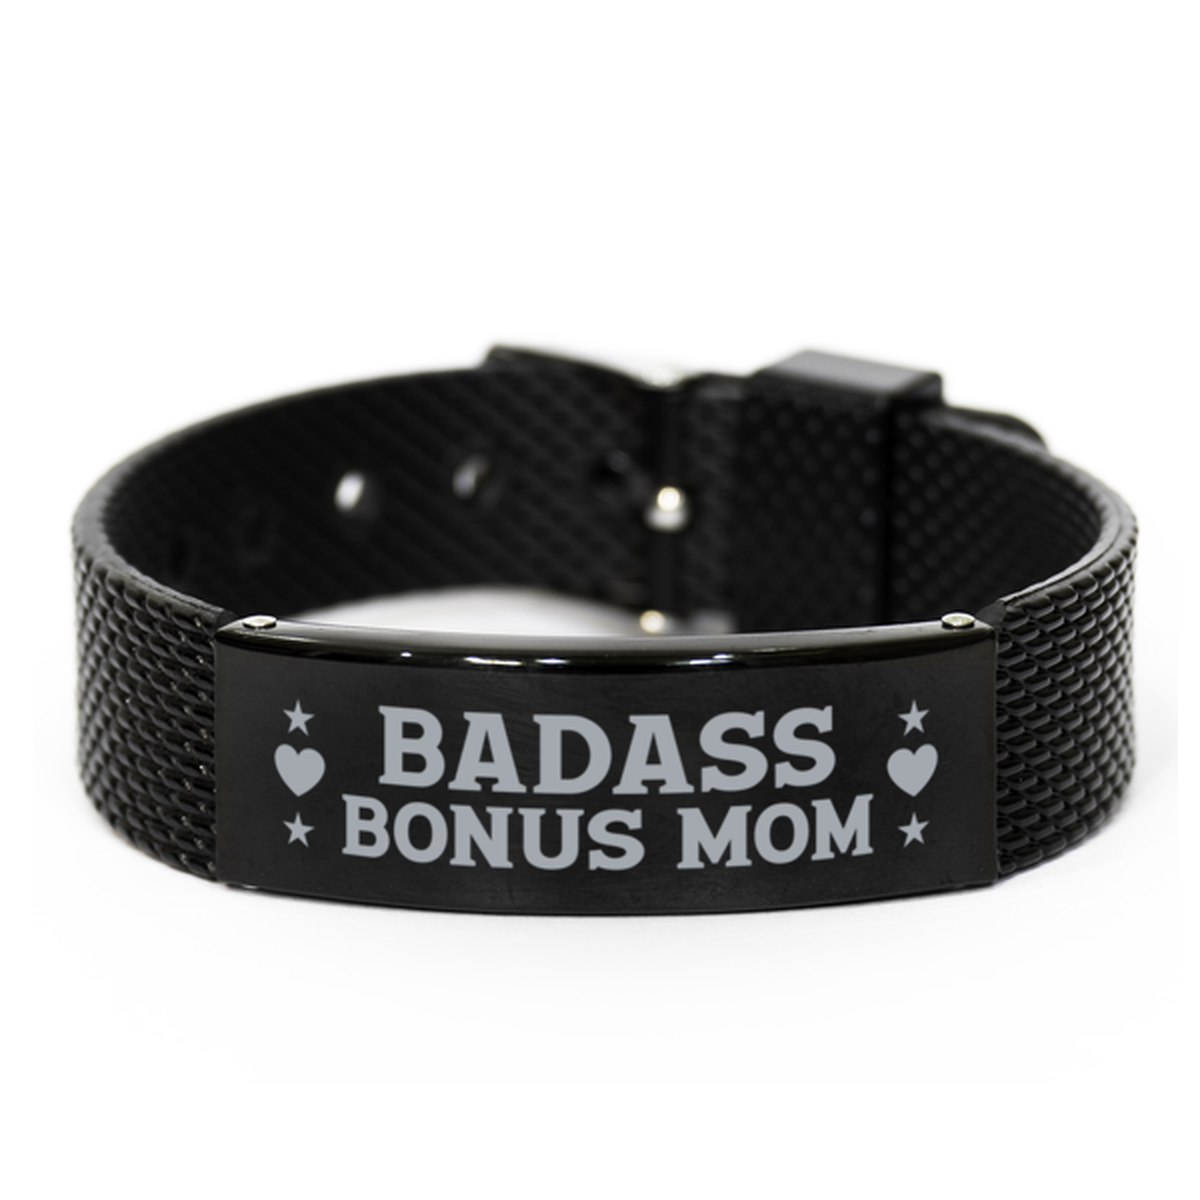 Bonus Mom Black Shark Mesh Bracelet, Badass Bonus Mom, Funny Family Gifts For Bonus Mom From Son Daughter